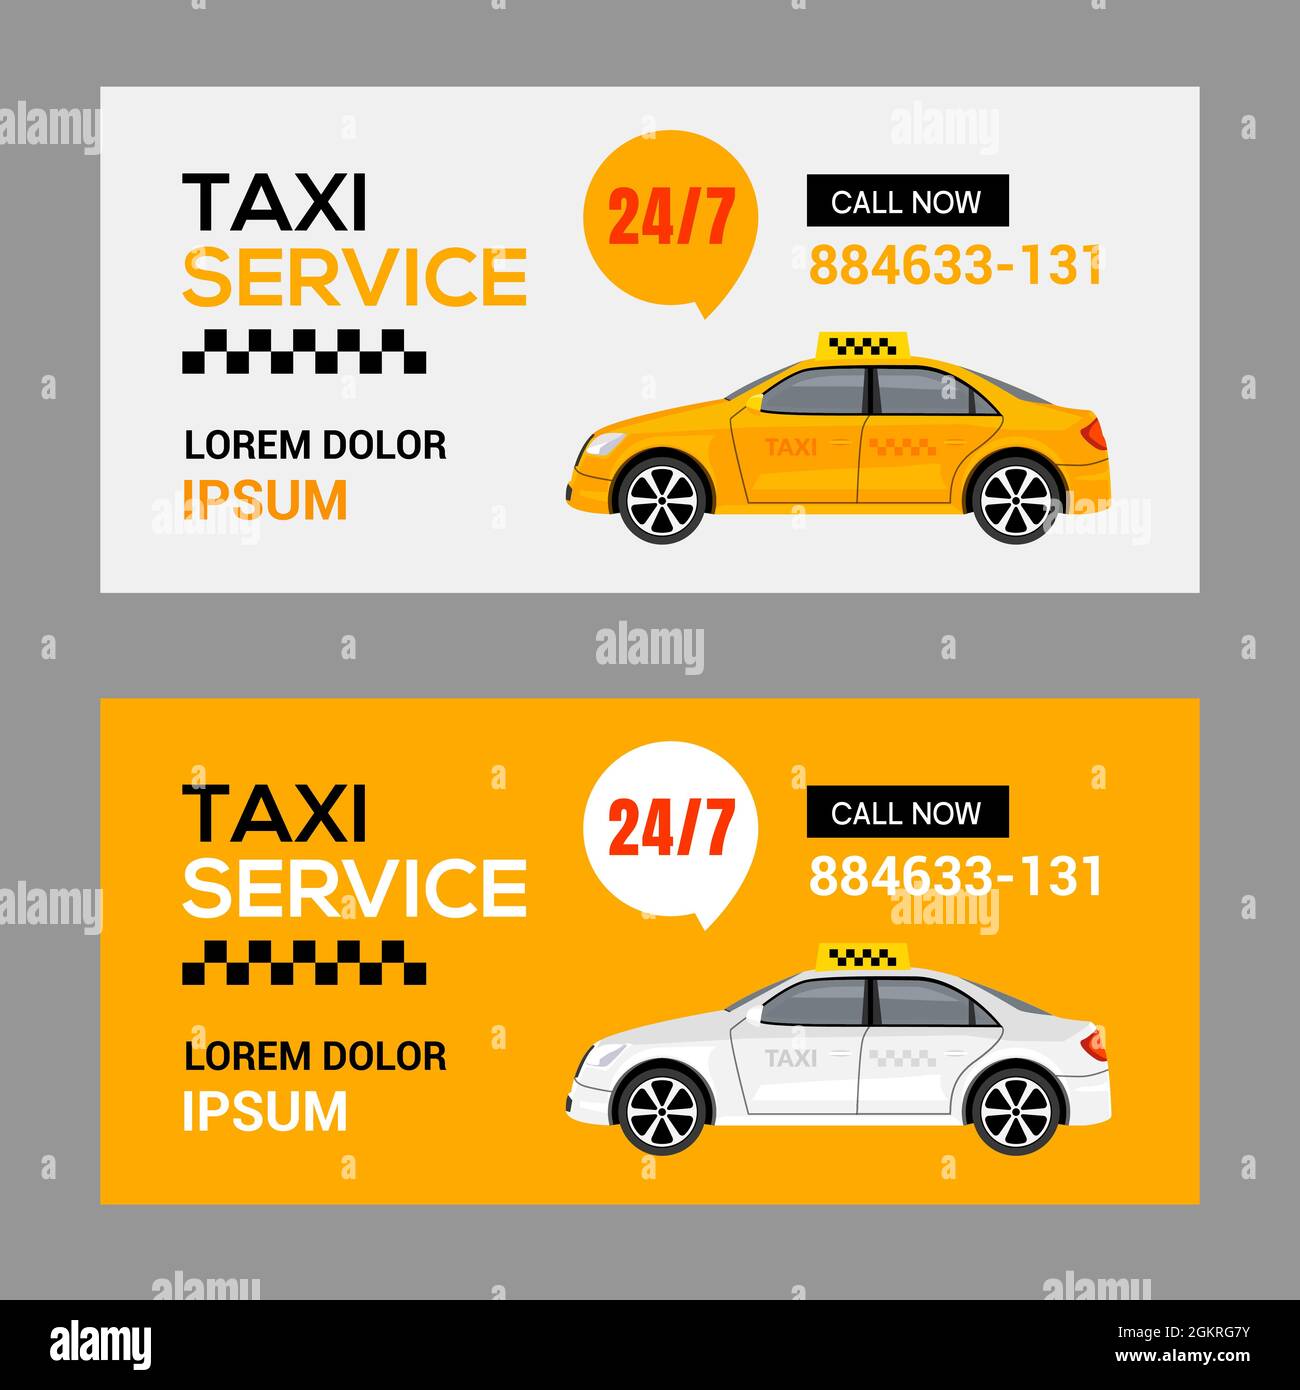 Hãy trải nghiệm dịch vụ taxi chuyên nghiệp và đáng tin cậy của chúng tôi. Hành trình của bạn sẽ được hỗ trợ bởi một đội ngũ tài xế chuyên nghiệp với tâm huyết và nhiệt tình. Hãy đặt xe ngay để thấy sự khác biệt về độ chuyên nghiệp và giá trị cao nhất mà chúng tôi mang lại.